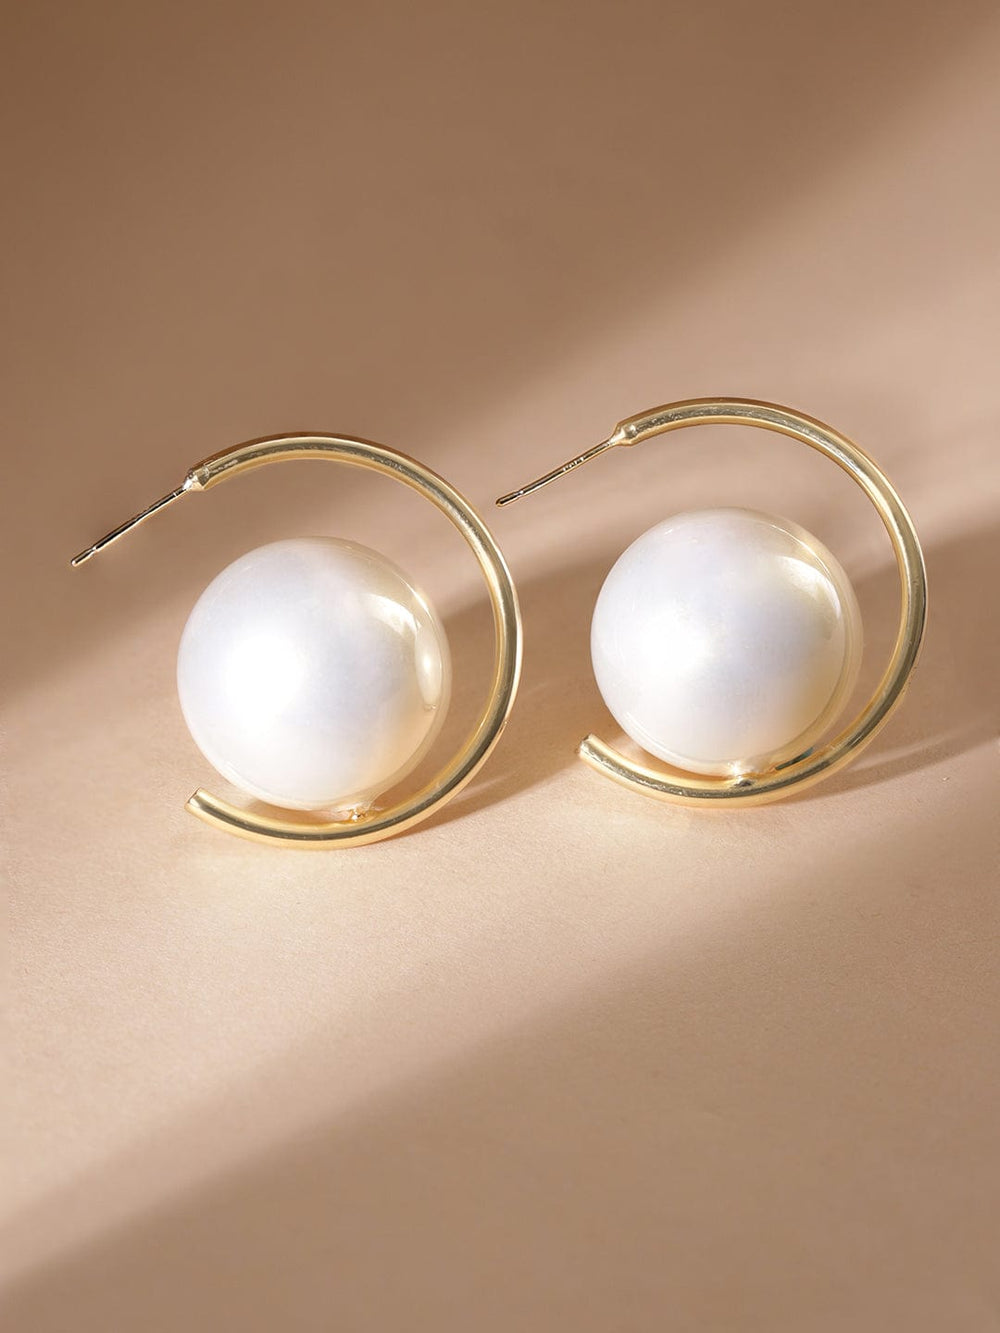 Rubans Voguish Pearlescent Elegance: Gold-Tone Hoop Earrings  Earrings